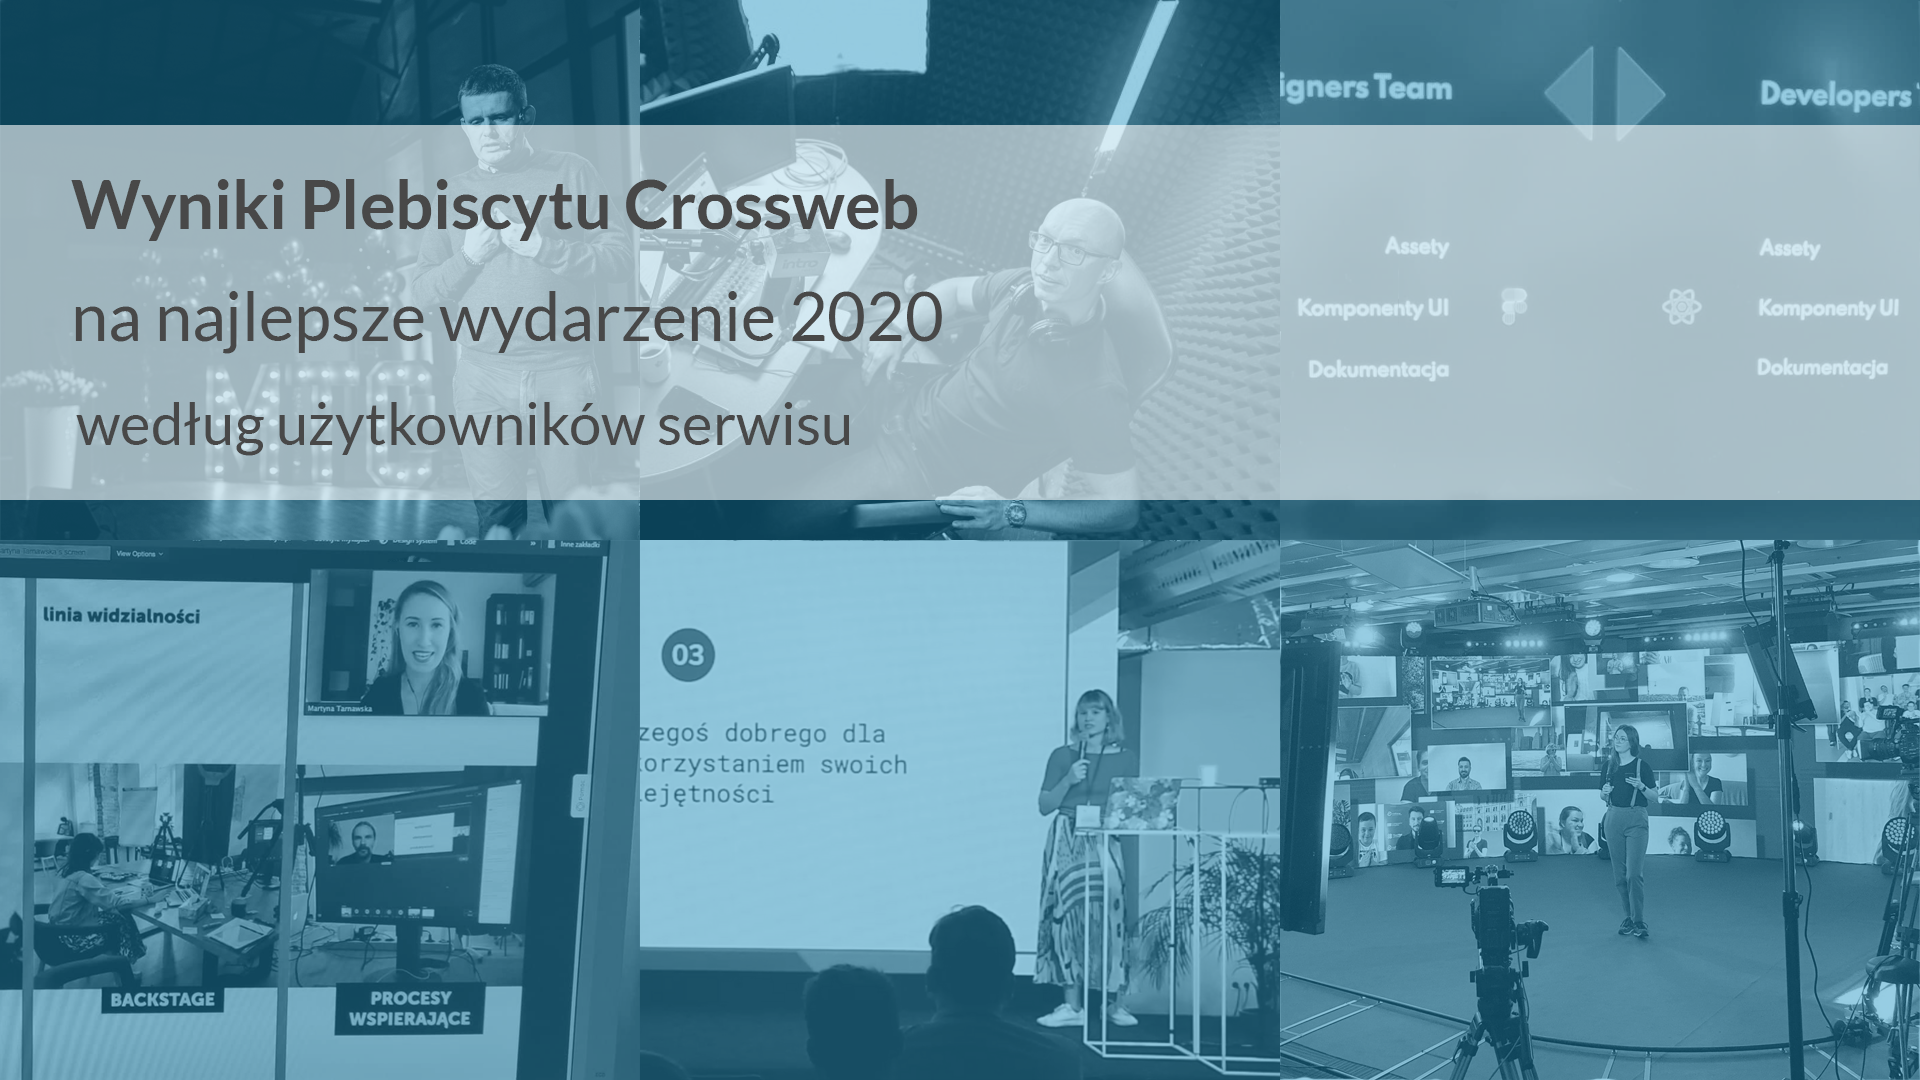 Wyniki Plebiscytu Crossweb na najlepsze wydarzenie 2020